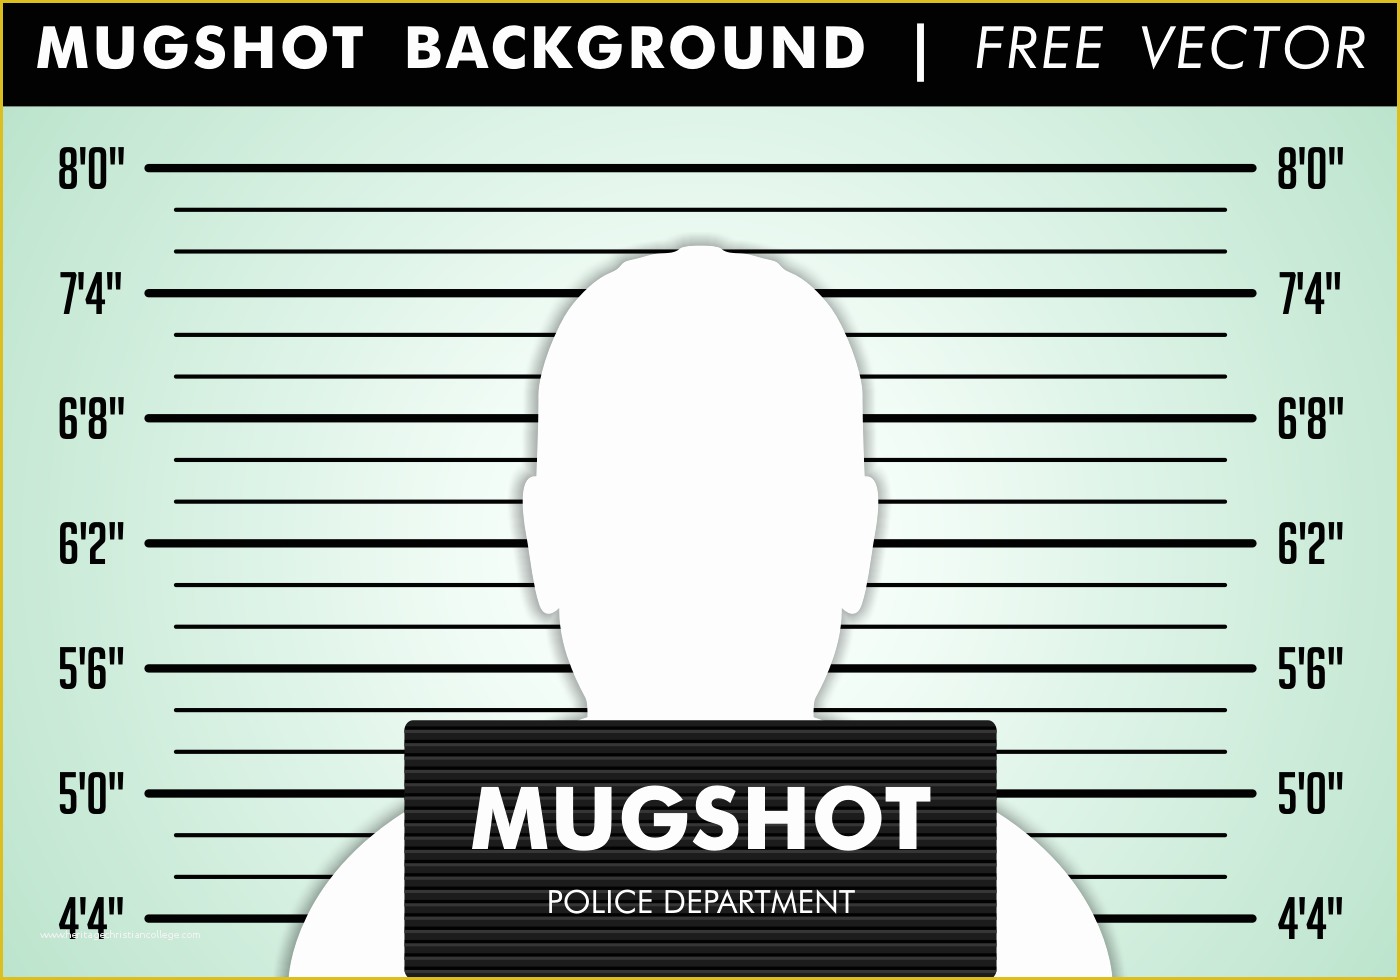 Mug Template Free Download Of Mugshot Background Free Vector Download Free Vector Art